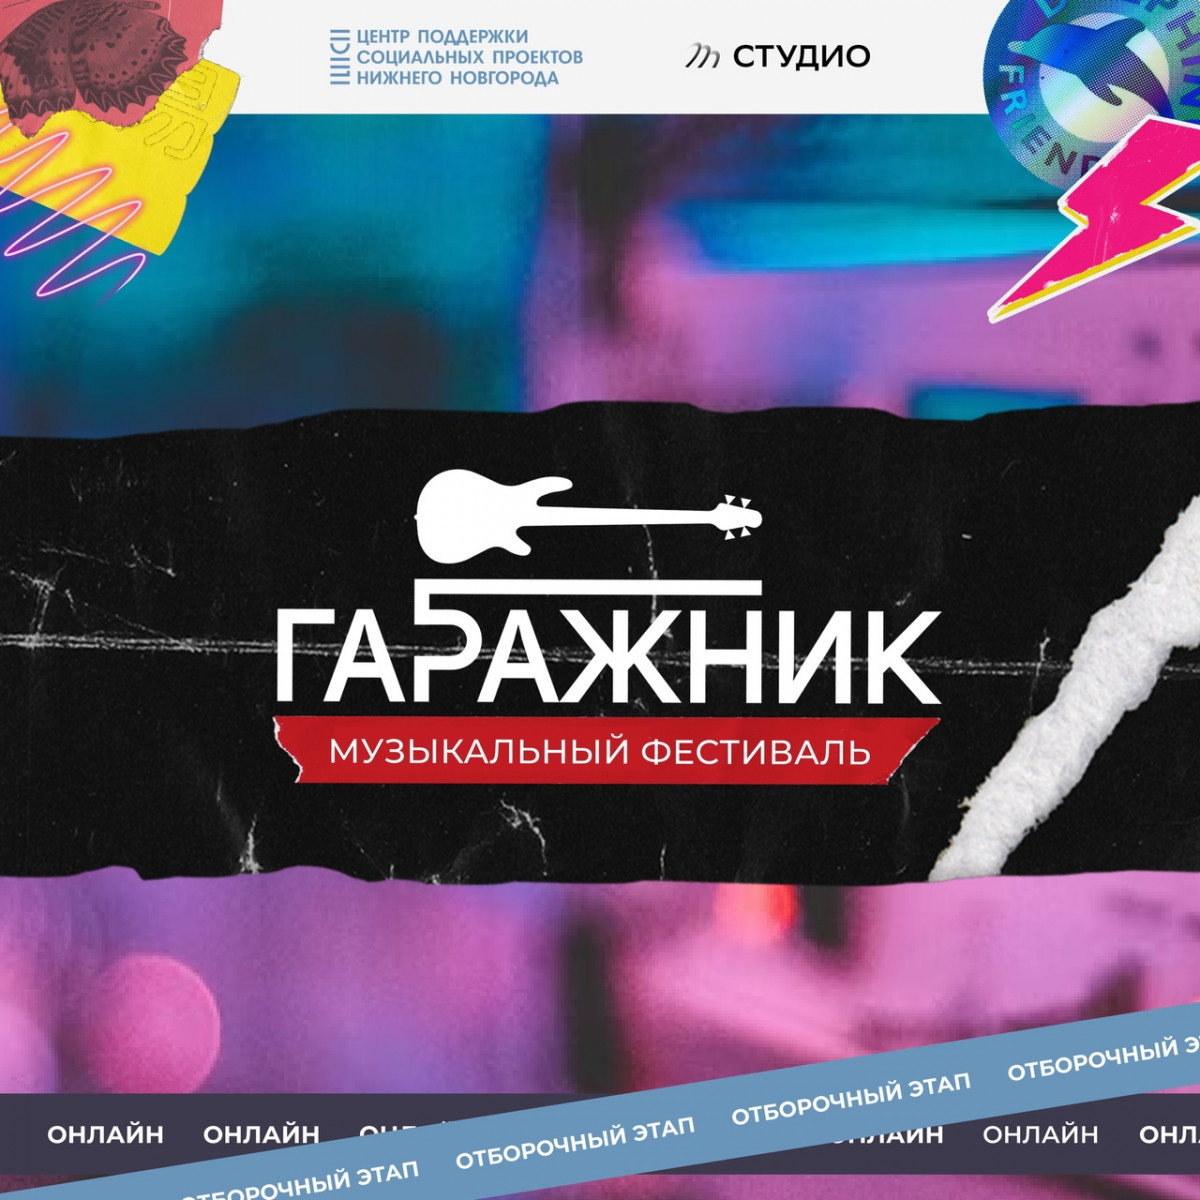 В Нижнем Новгороде завершается приём заявок на участие в фестивале «Гаражник»